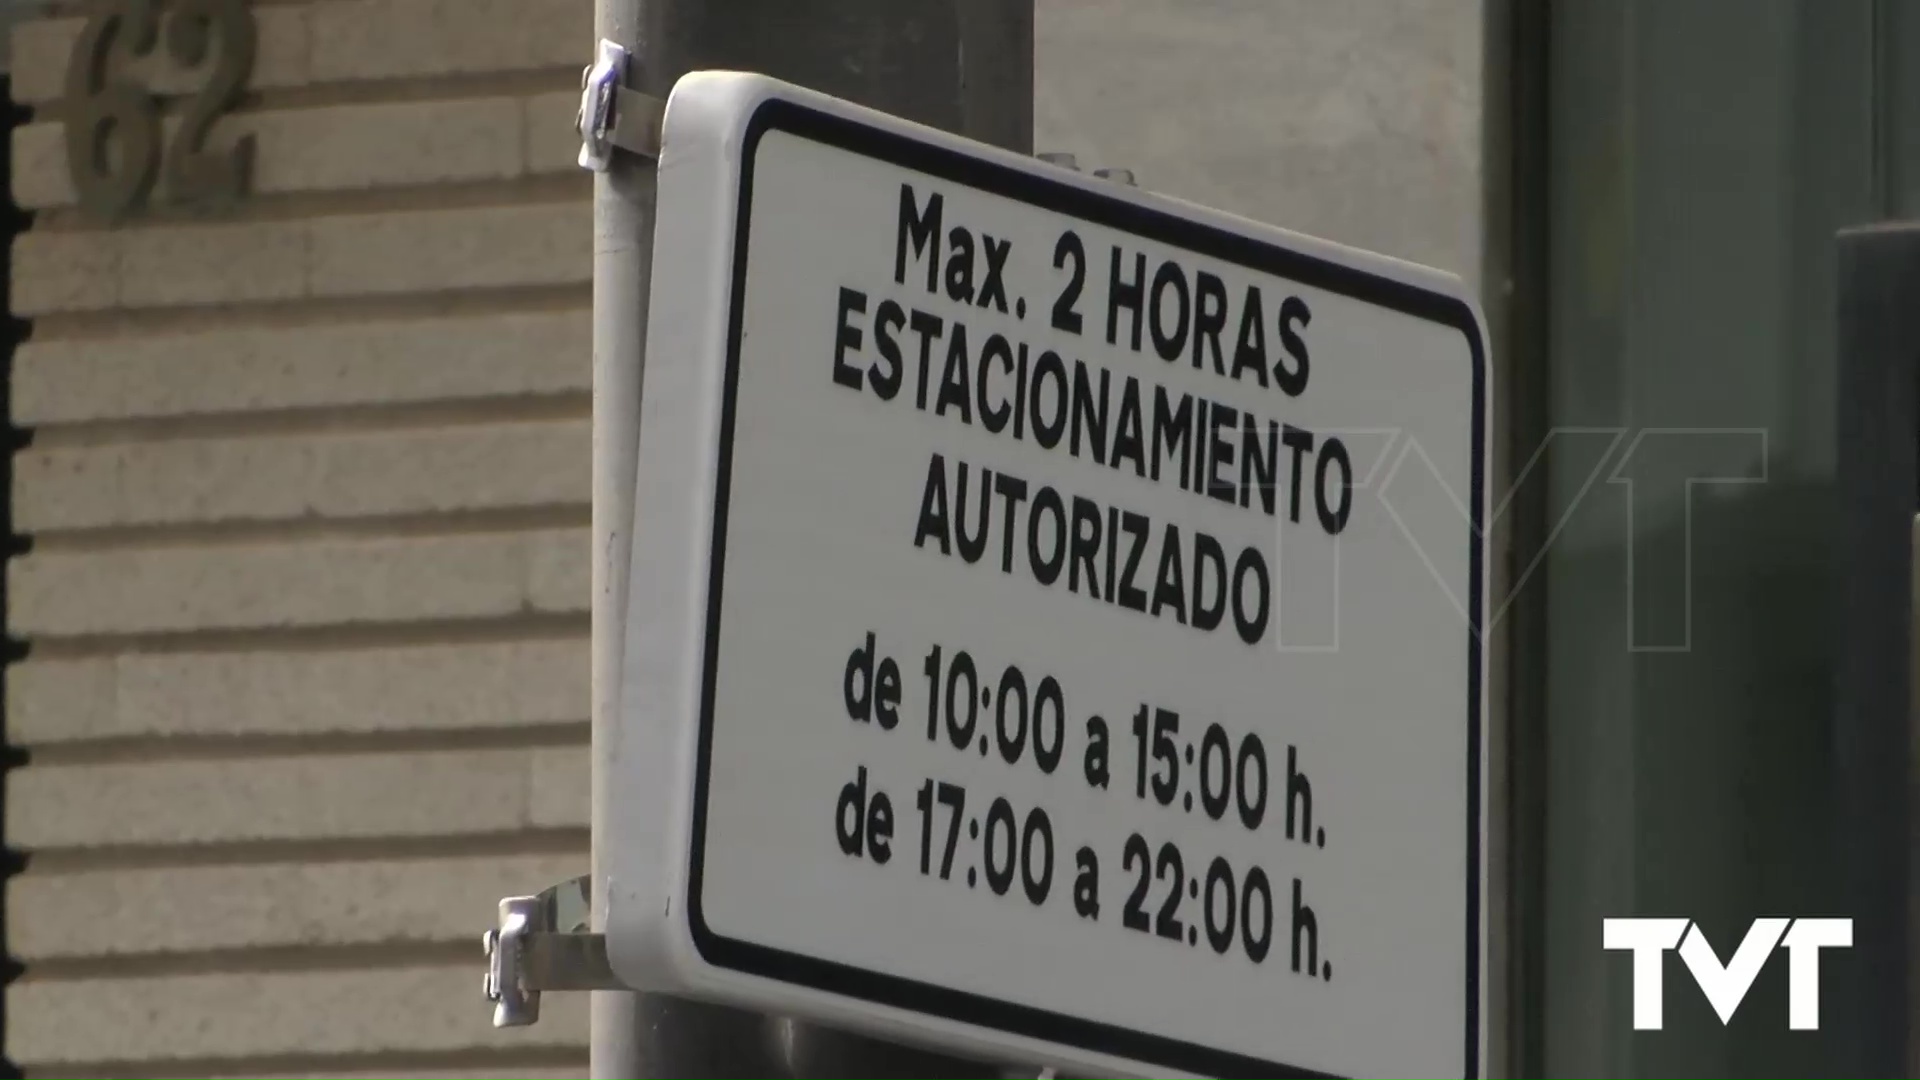 Imagen de Se estudia el cambio de horario autorizado para estacionar en Ramón Gallud